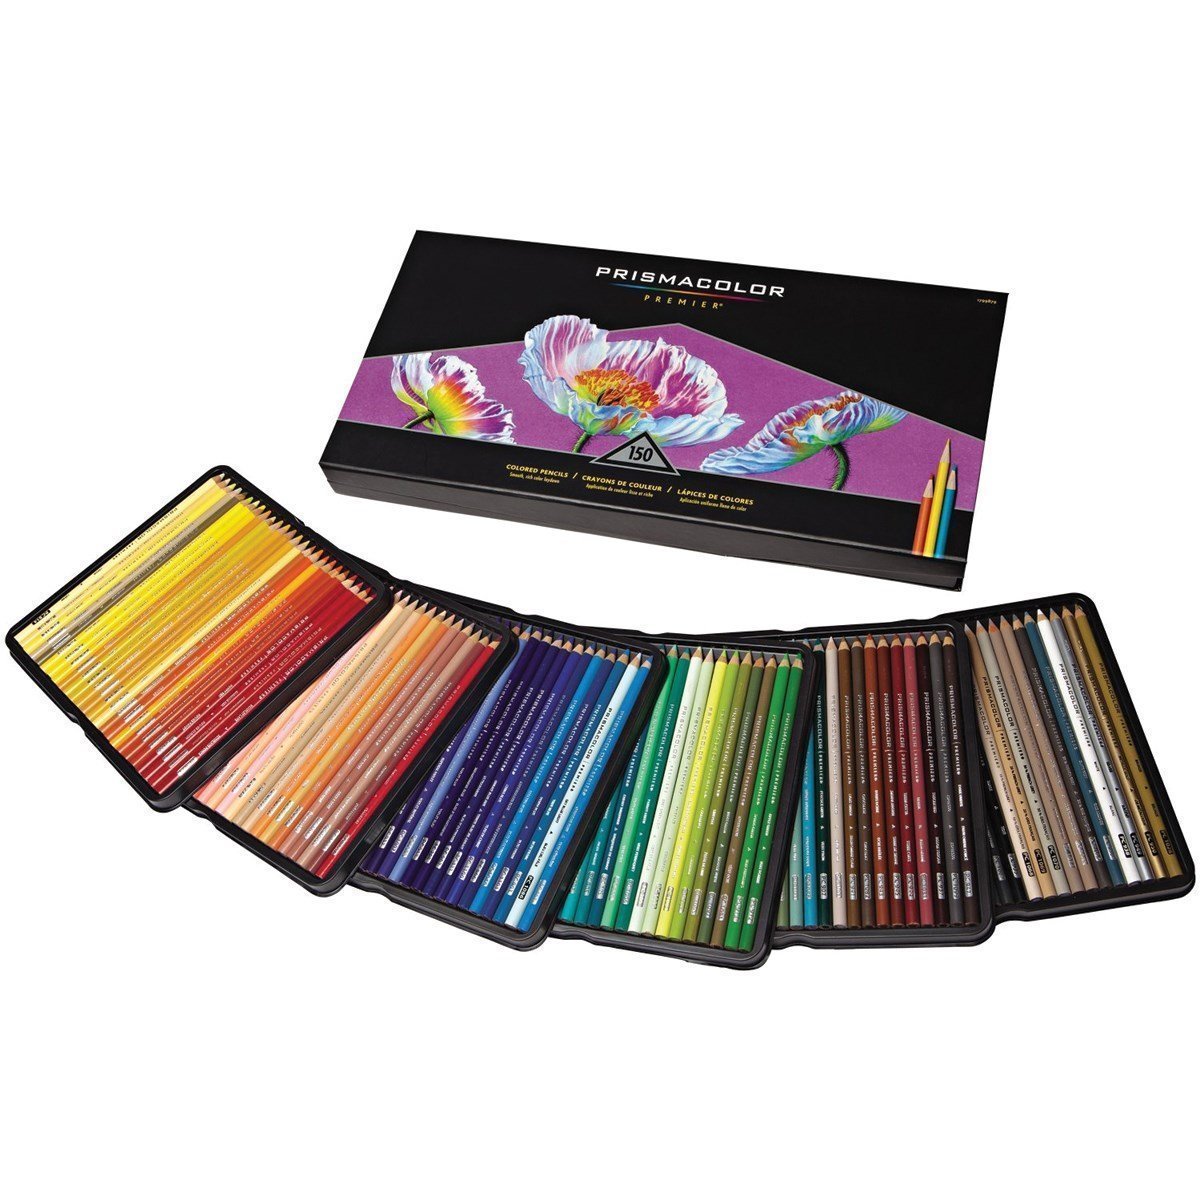 Prismacolor Premier Colored Pencils, Soft Core, 150-Count – Just $58.54!